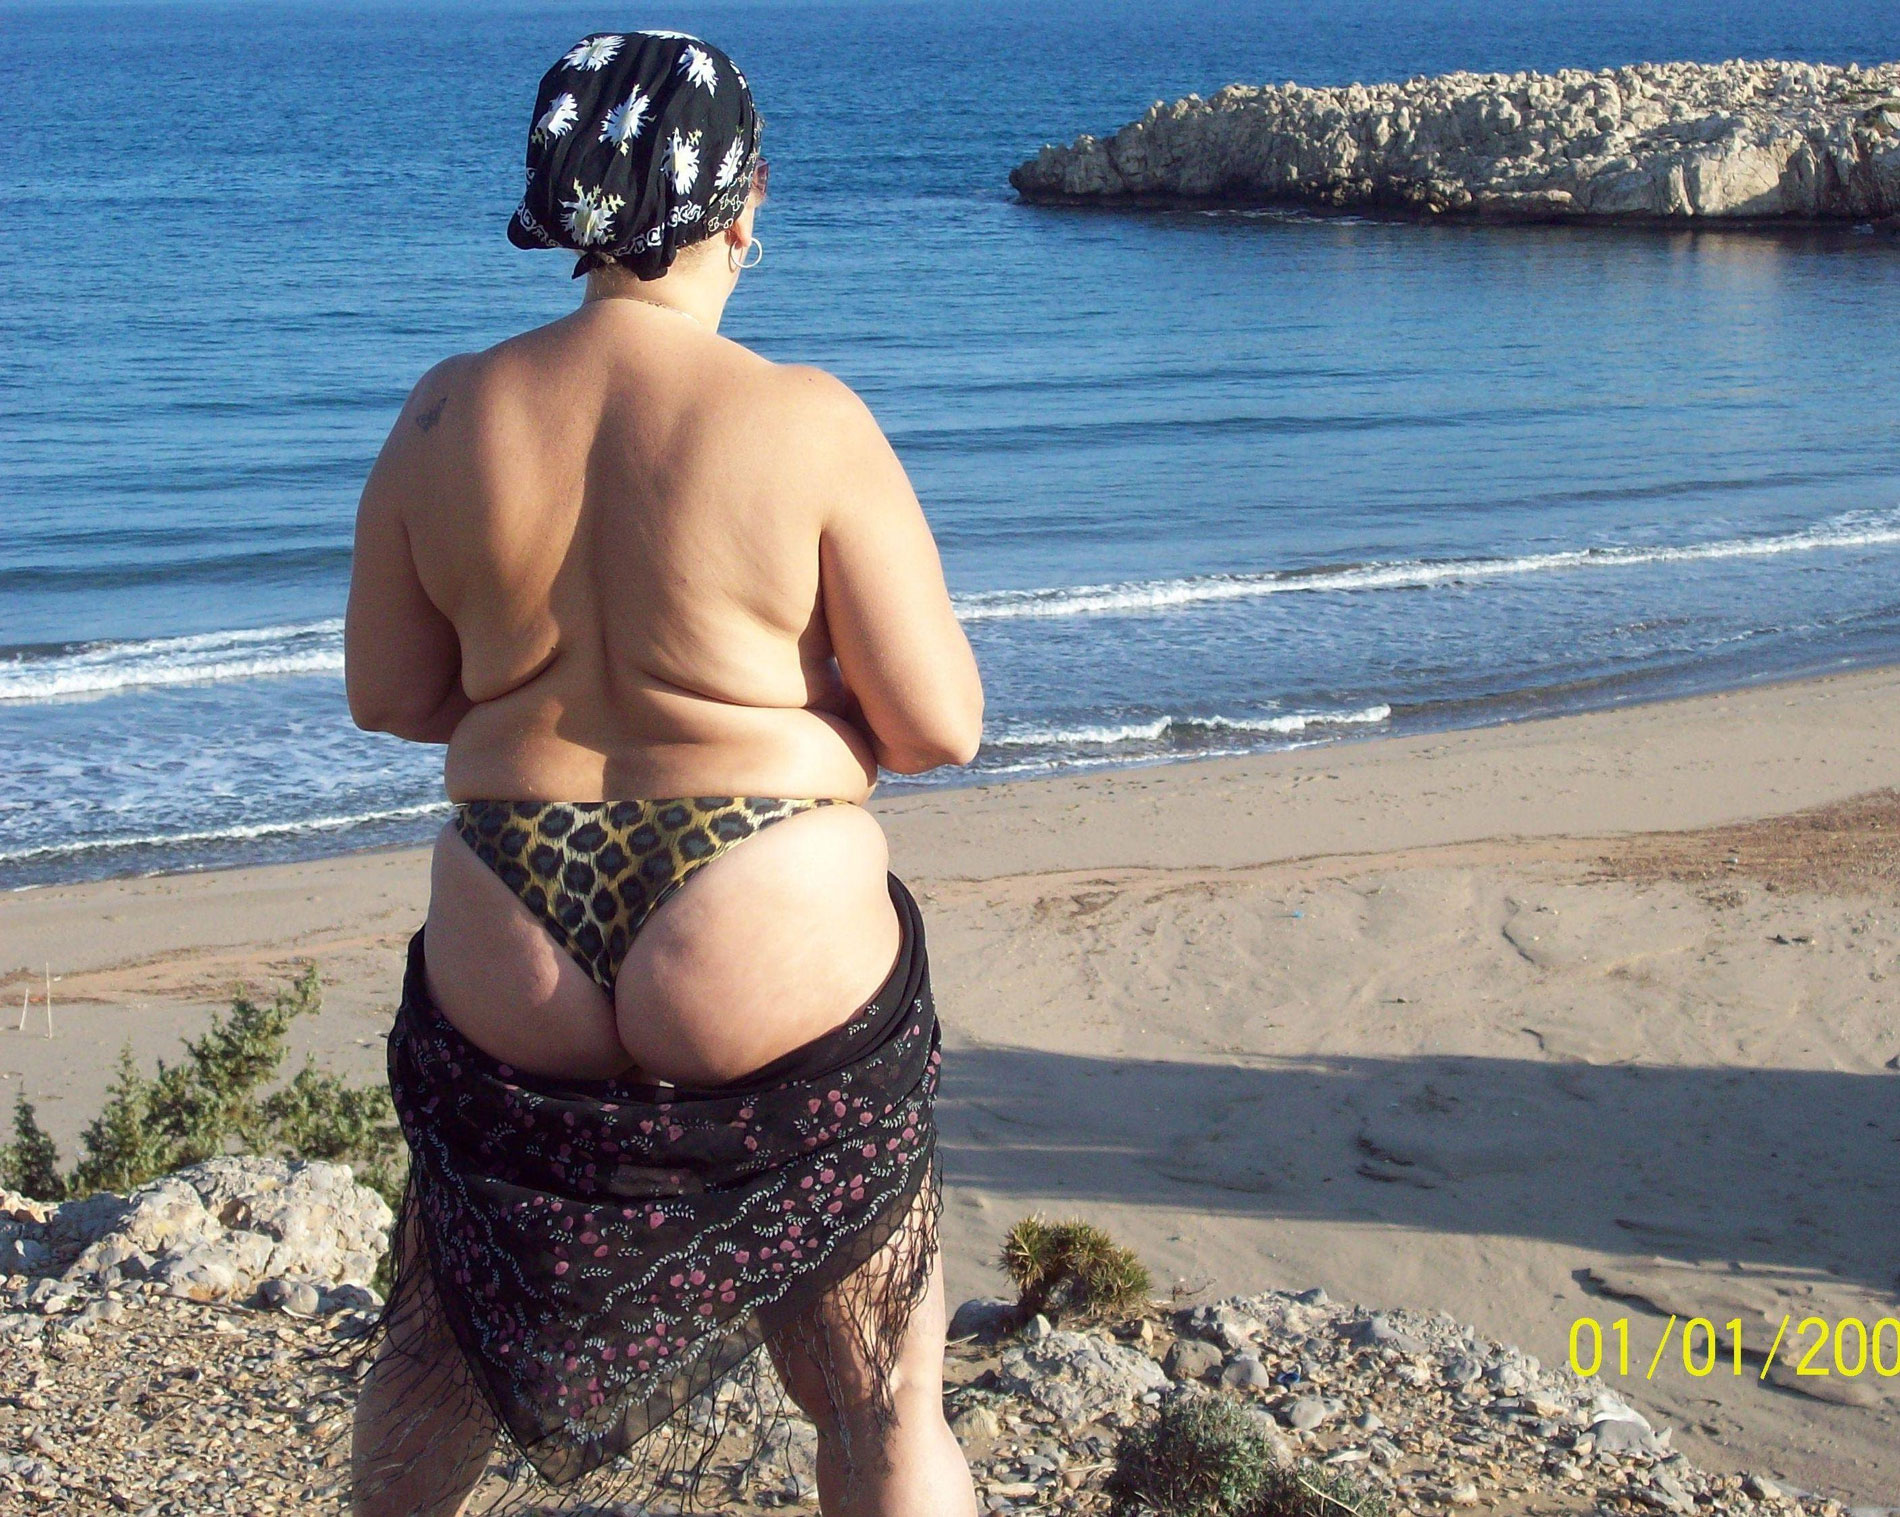 Fat nudist moms and grannies sunbathing nude on beach